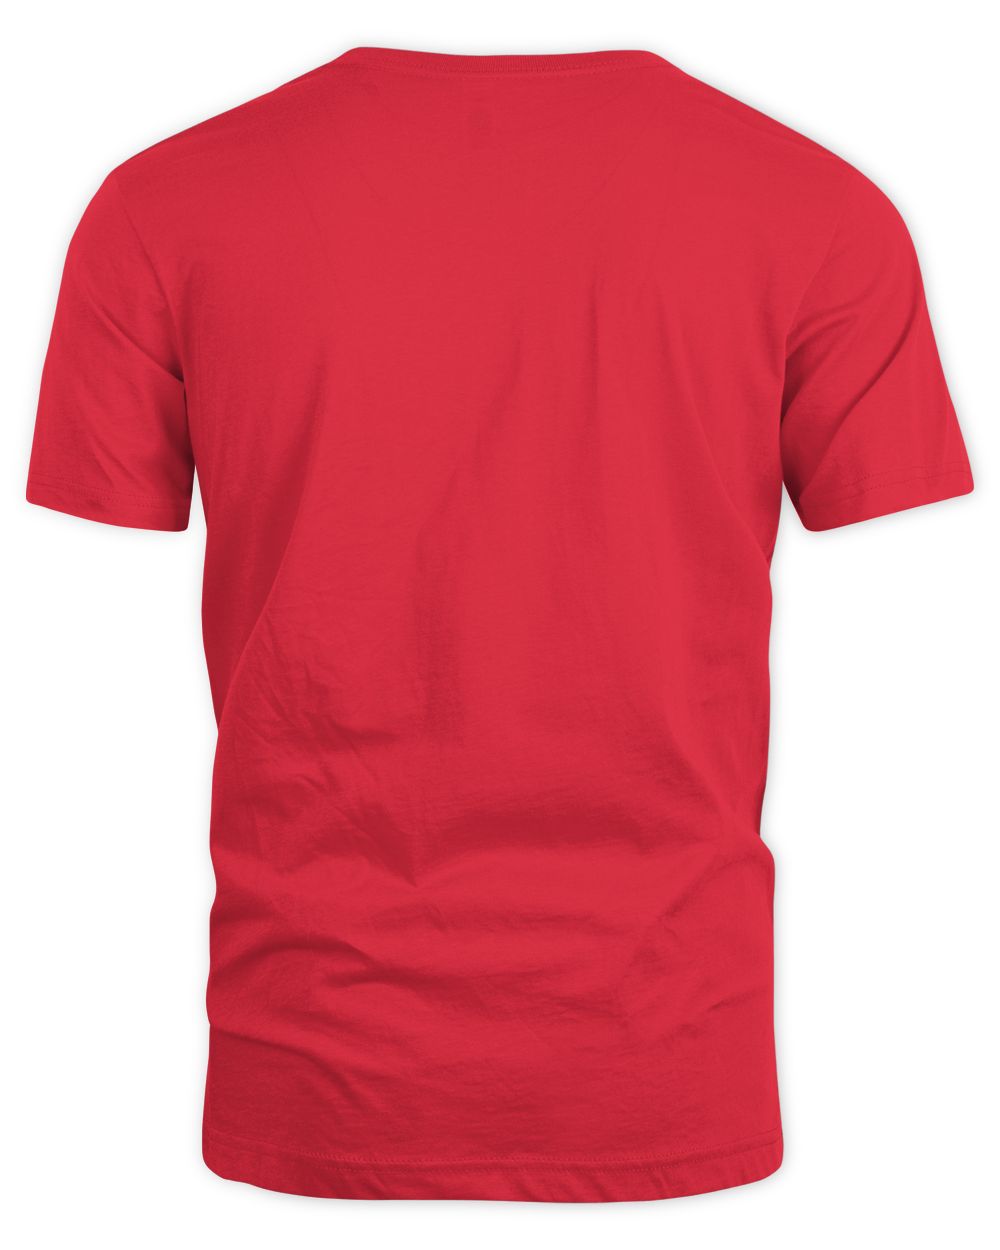 Mr Ballen Merch Conspiracy Shirt Unisex Standard T-Shirt red 